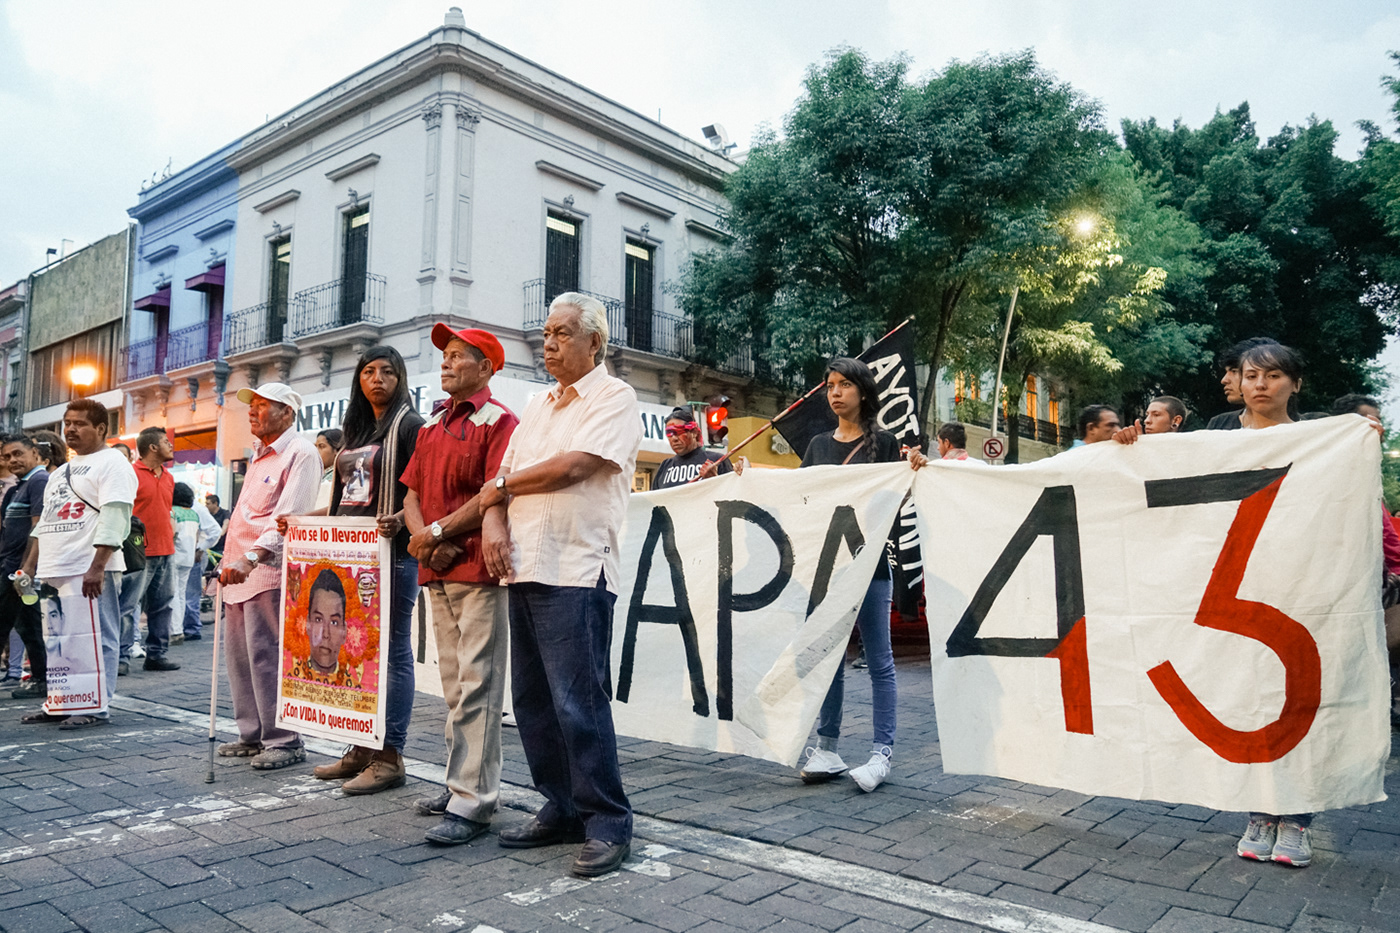 Ayotzinapa CuarentayTres Derechos humanos desaparecidos marcha mexico normalistas